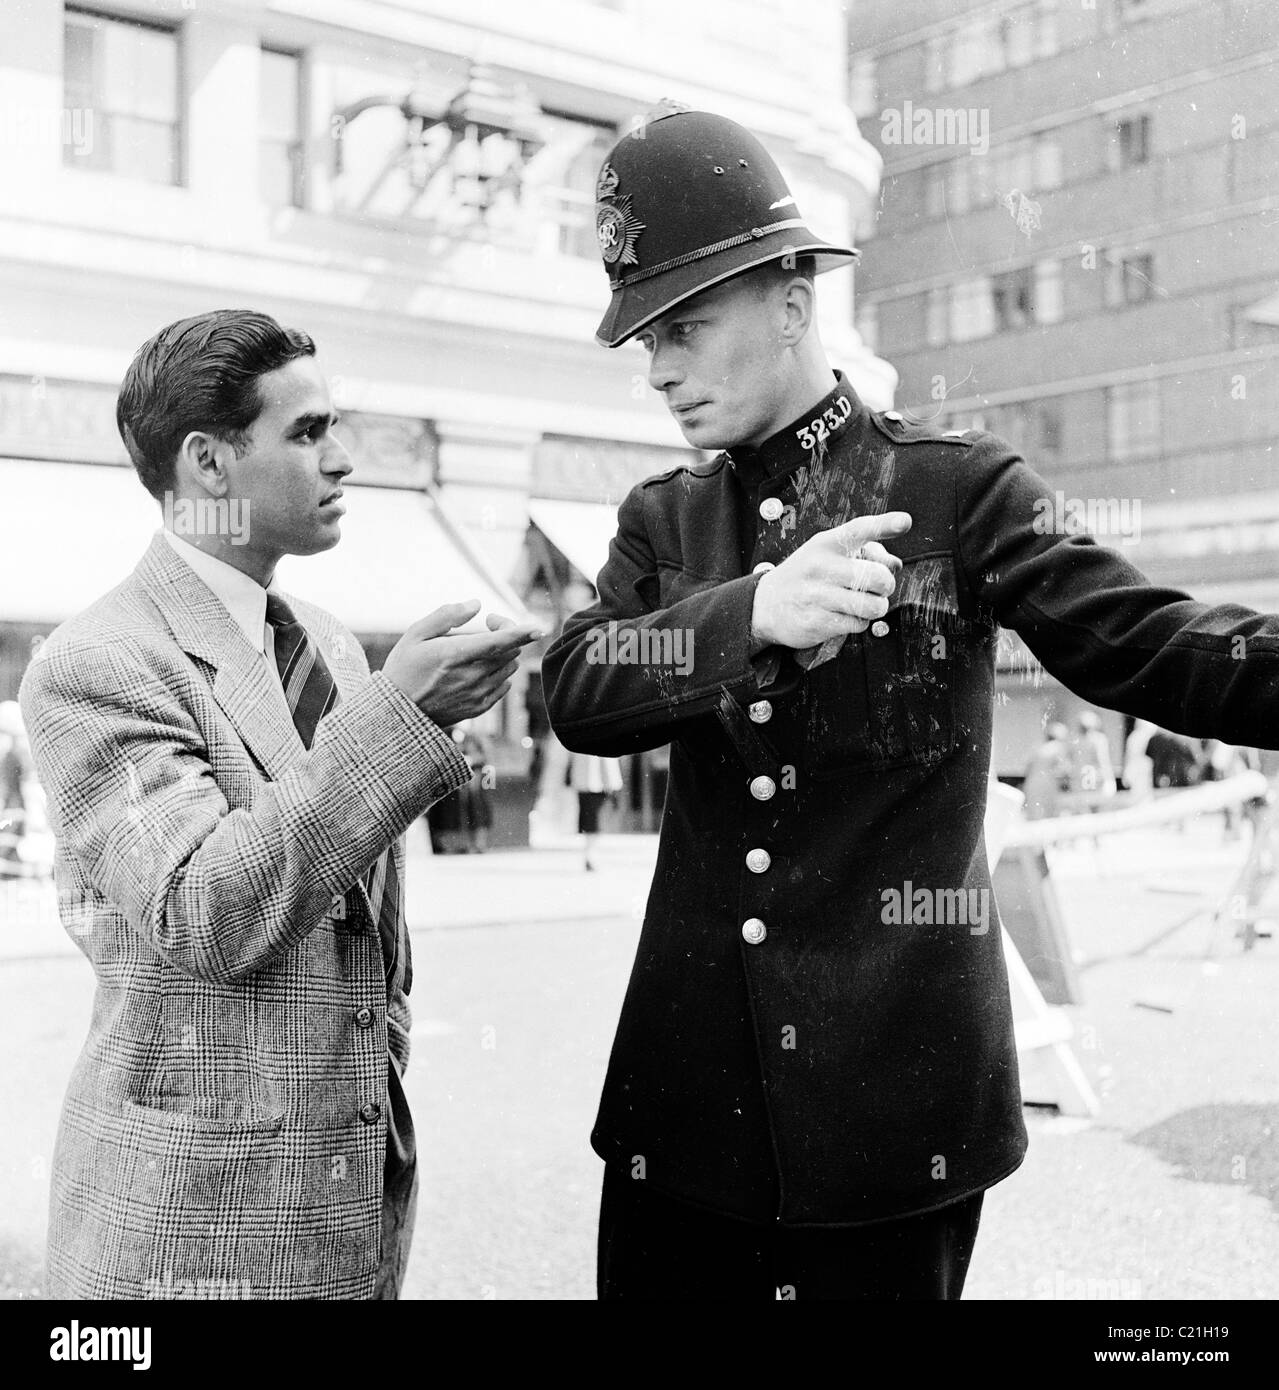 1950s, storico, Londra e un immigrato appena arrivato nel Regno Unito riceve indicazioni da un poliziotto britannico in uniforme e casco dell'epoca. Foto Stock